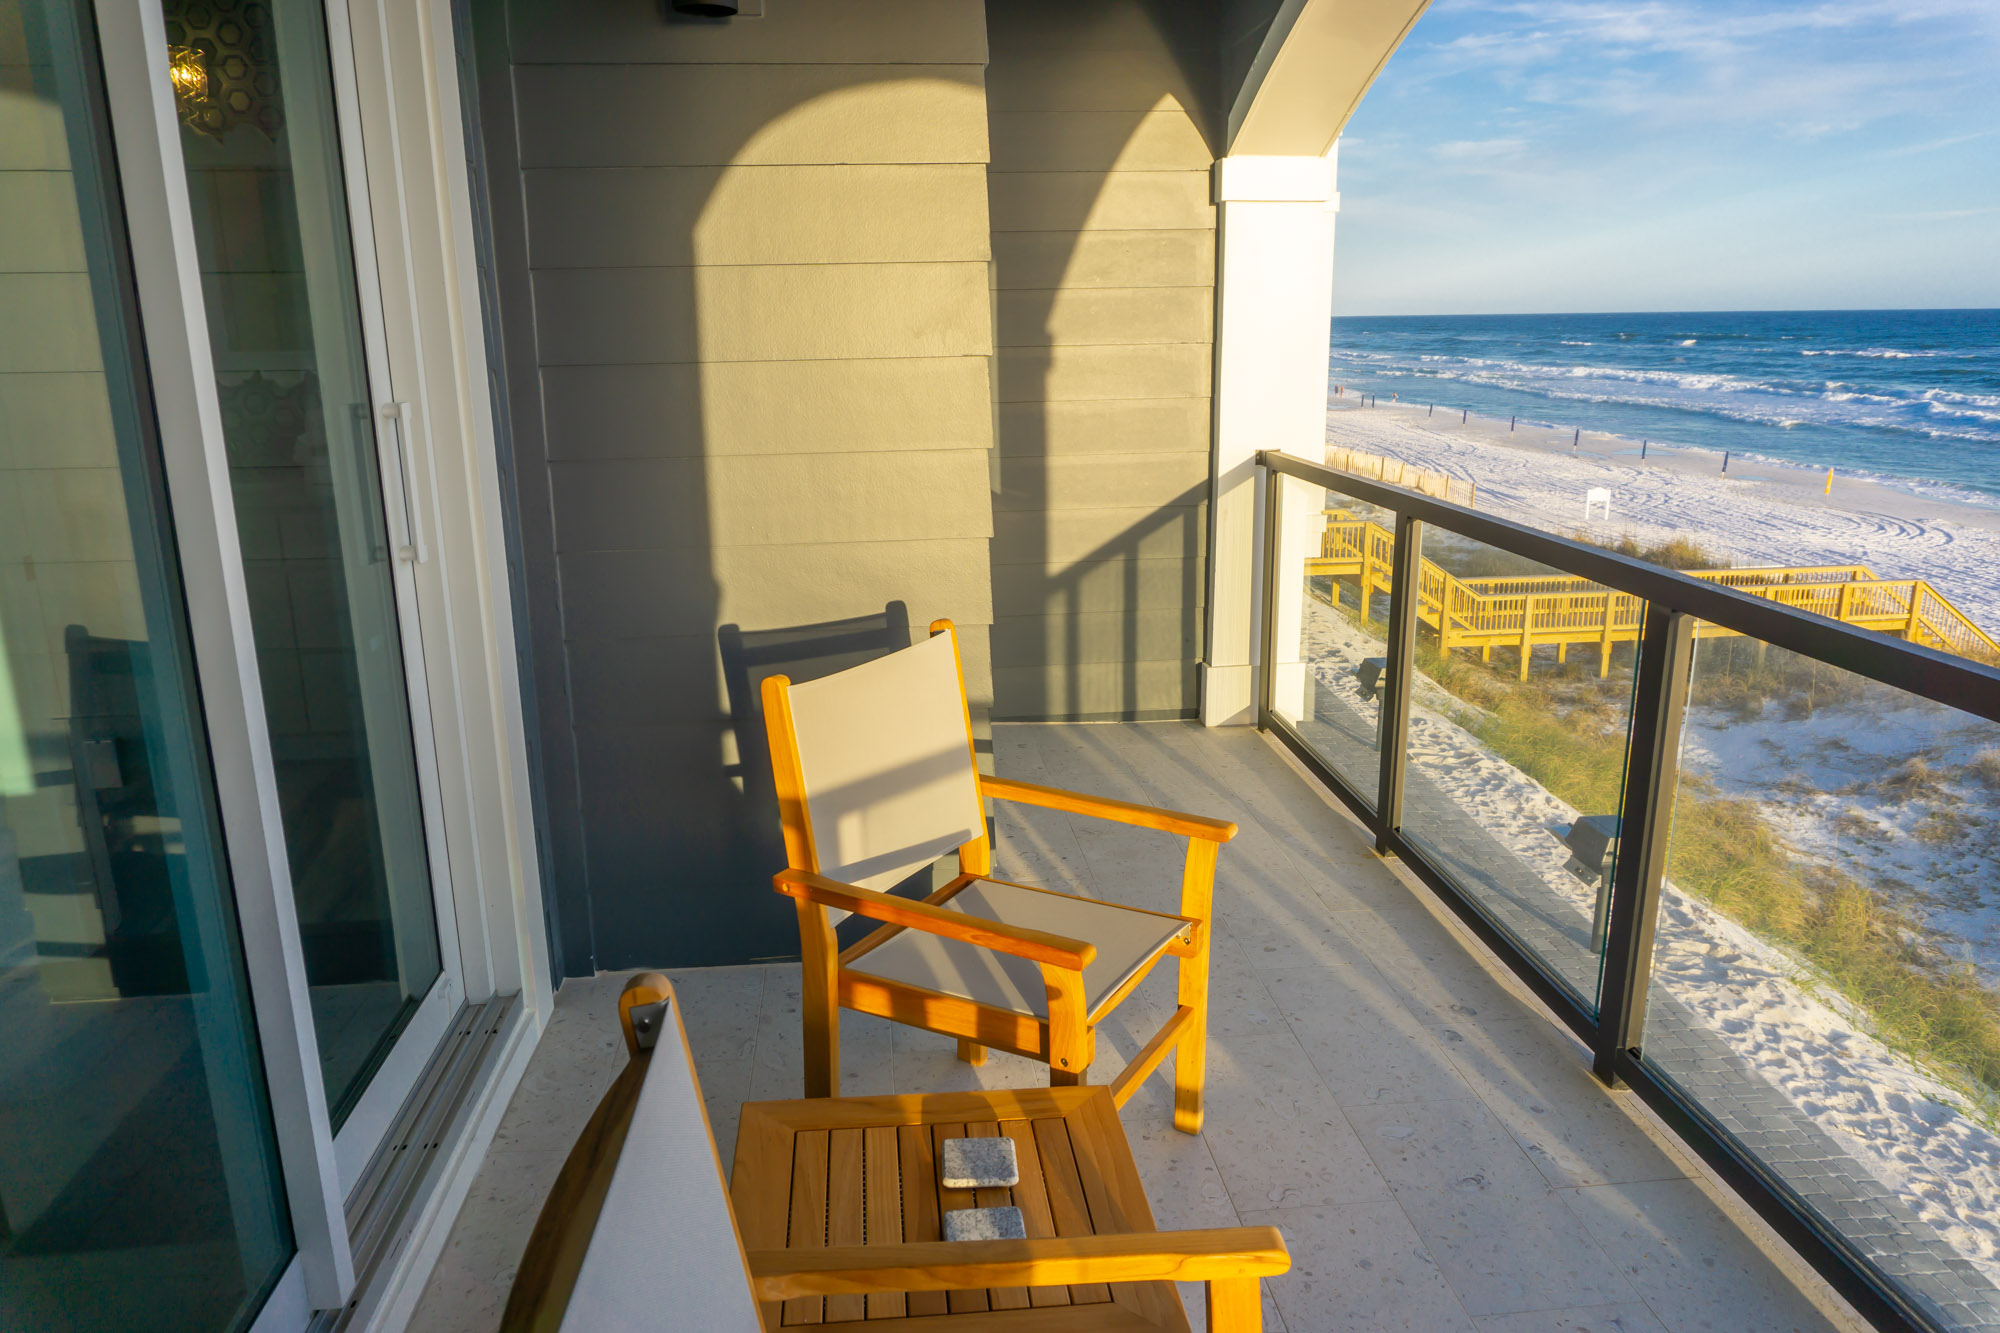 Crystal Clear (Henderson Beach Villas #1) Condo rental in Henderson Beach Villas in Destin Florida - #29